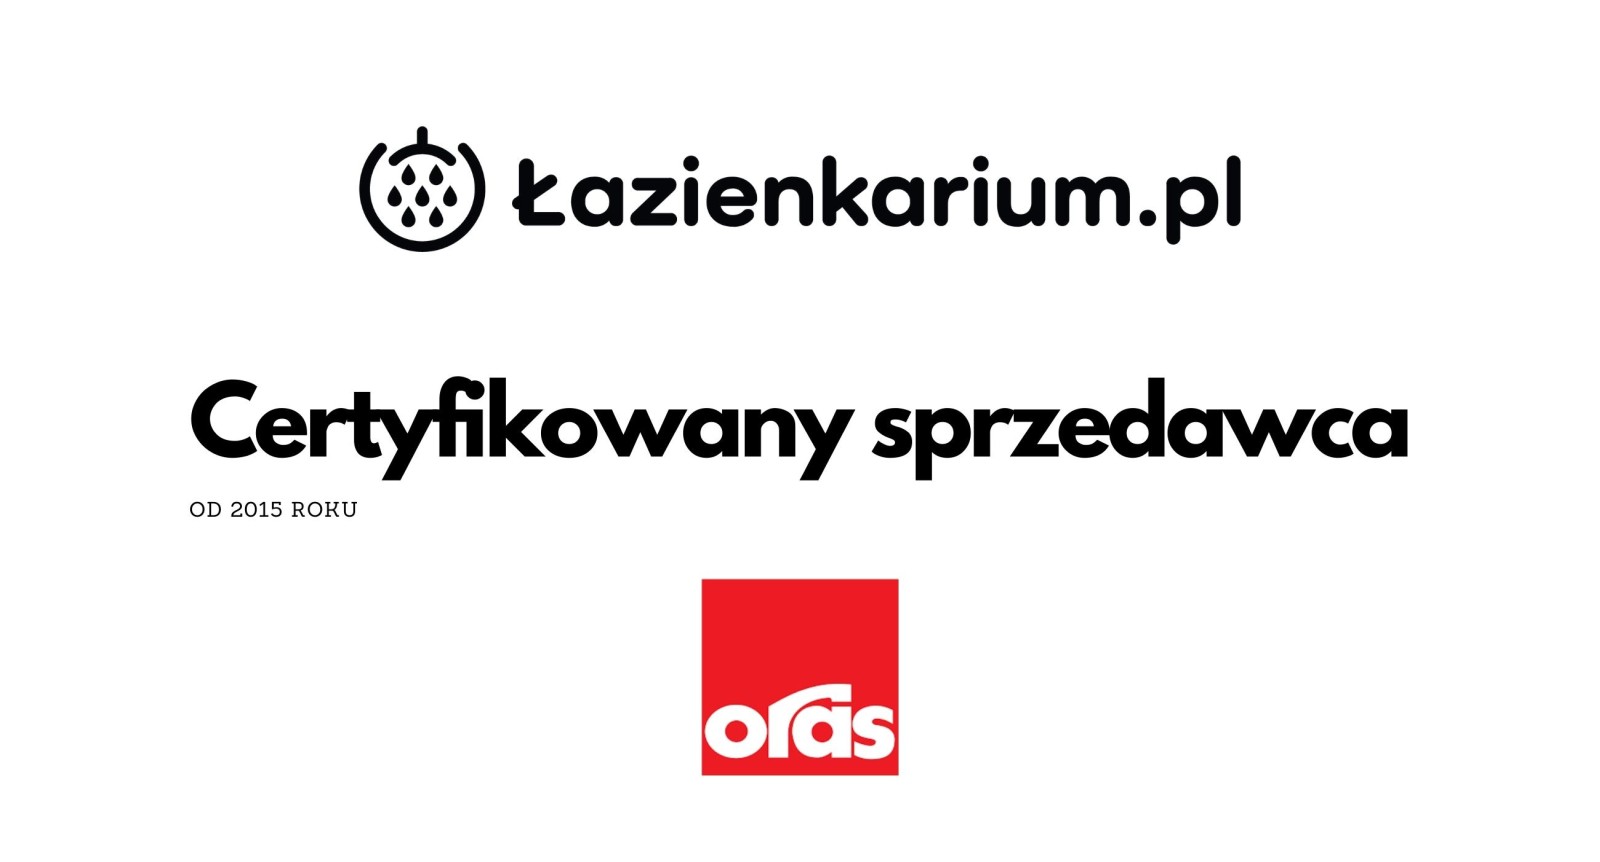 Oras Certyfikowany Sprzedawca Gdzie kupić zobaczyć? Kraków Warszawa Wrocław Poznań Sklep internetowy lazienkarium.pl